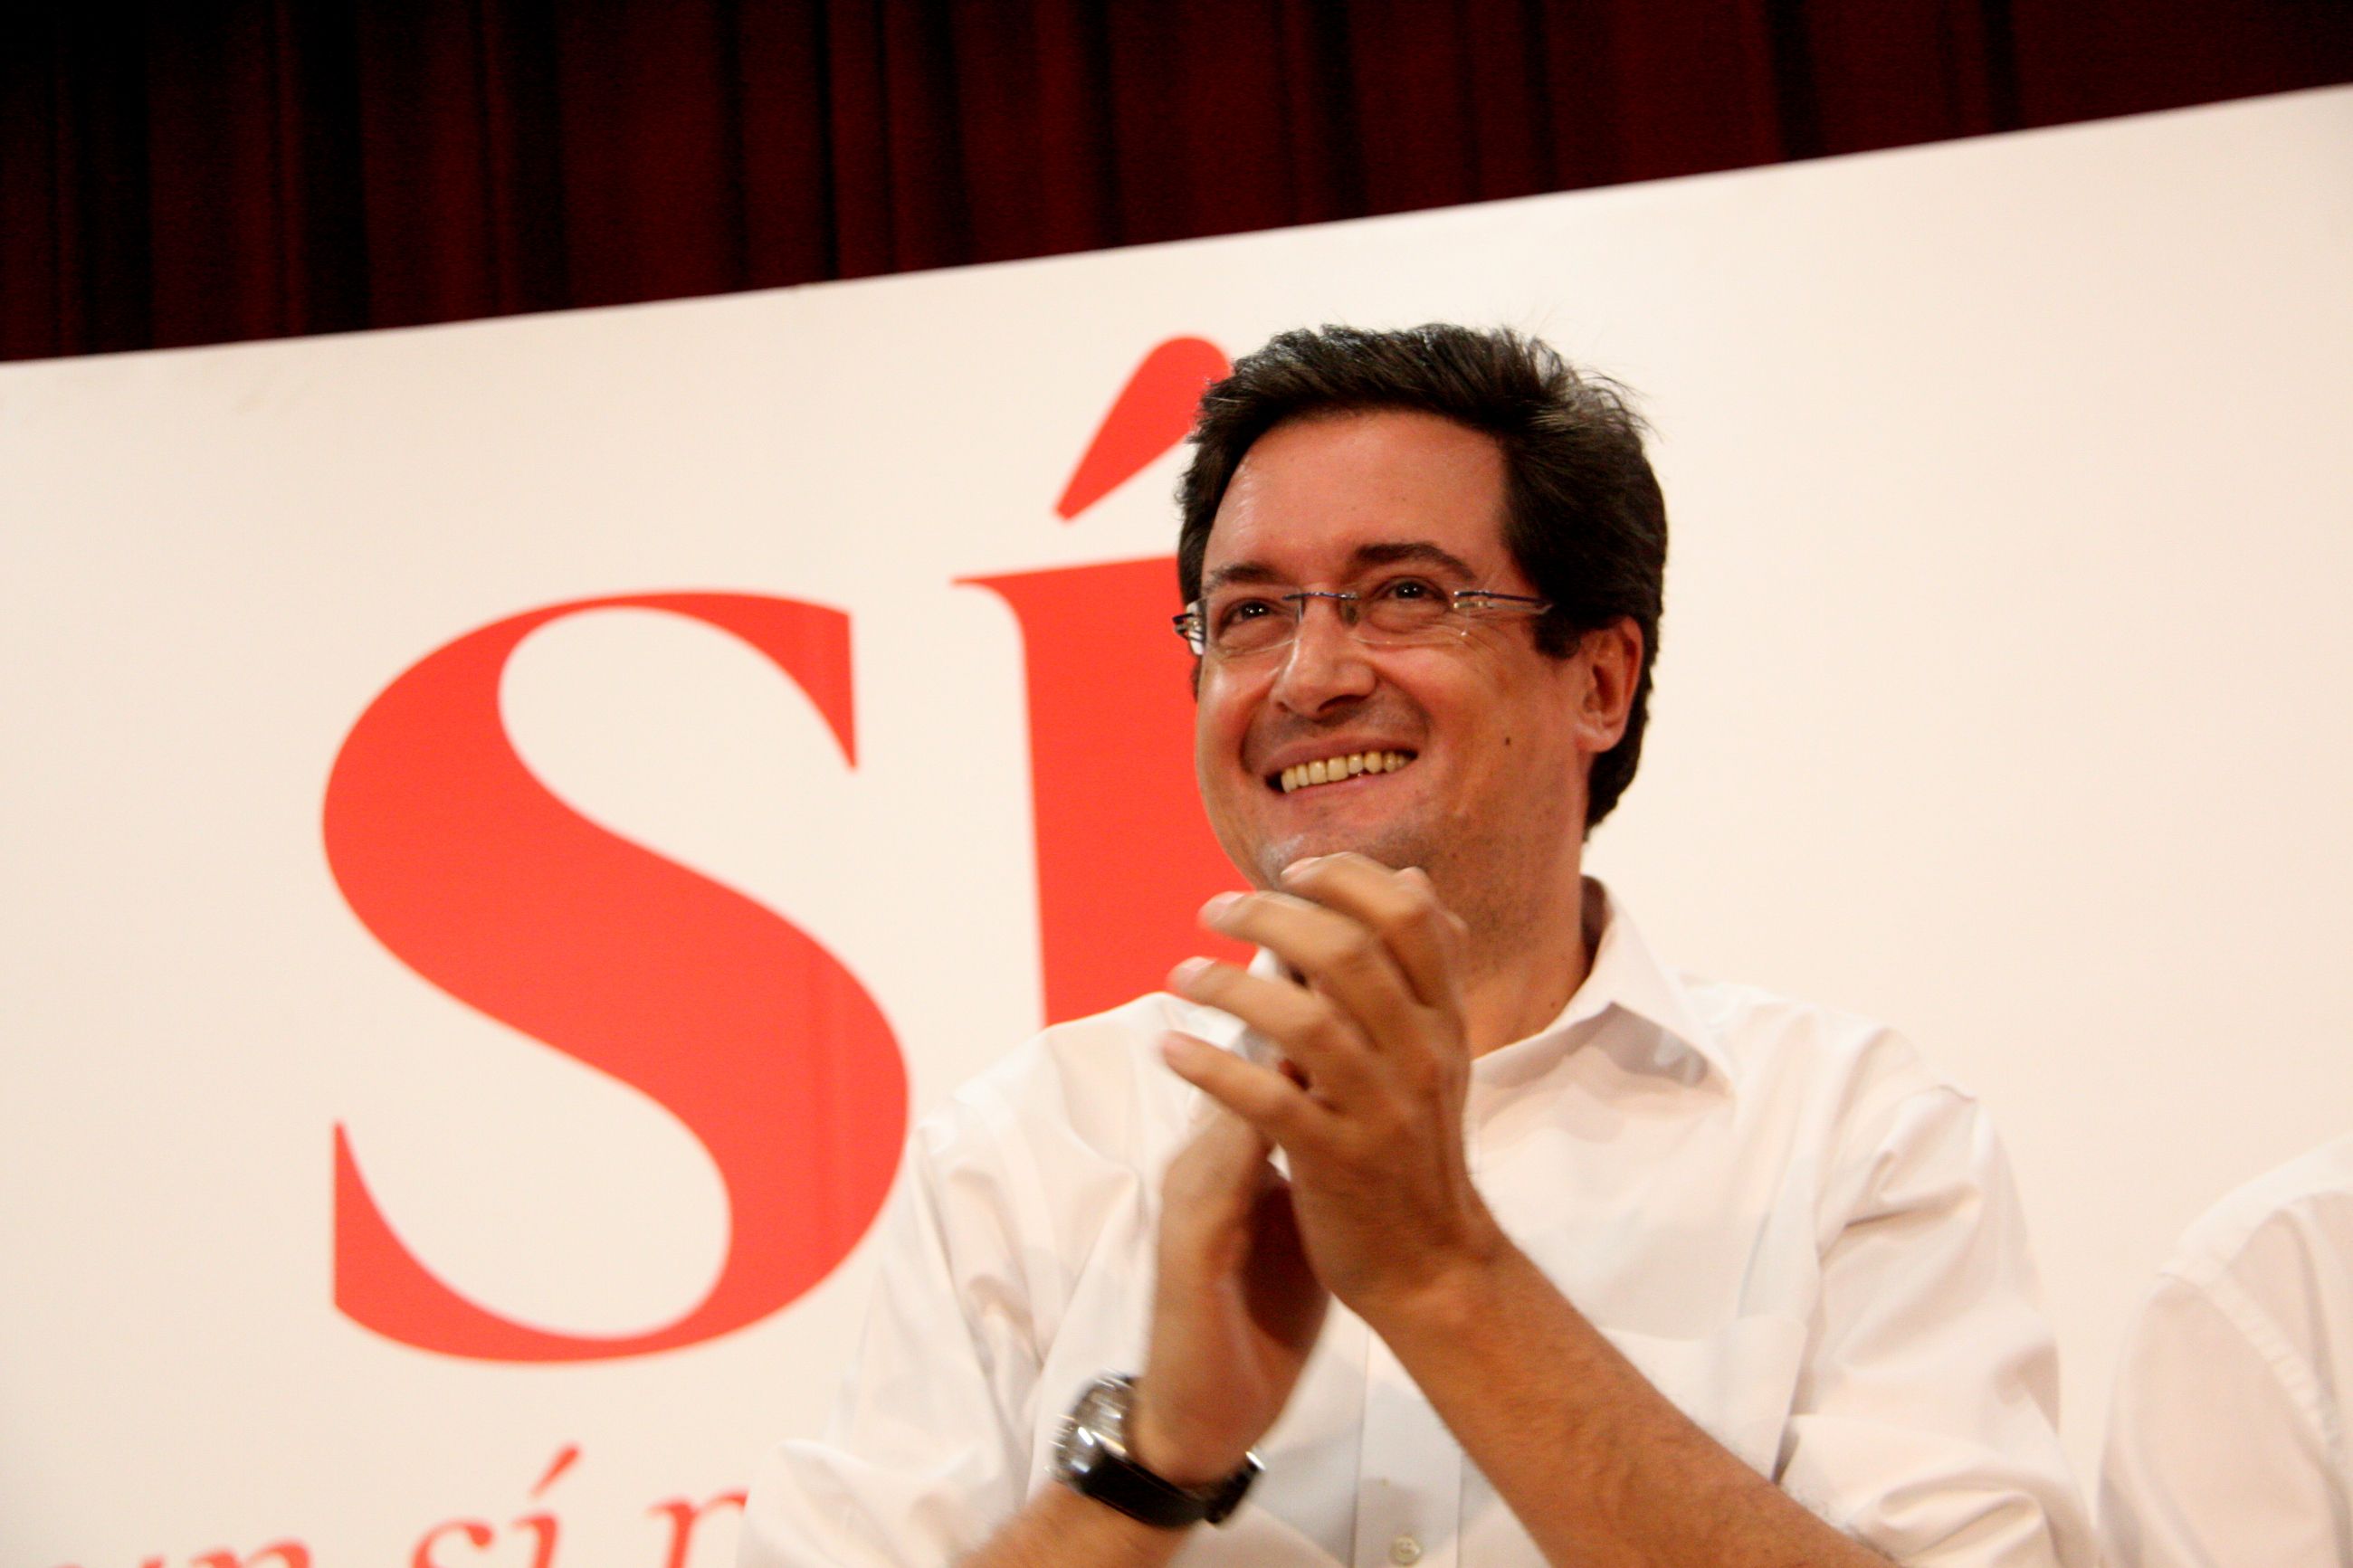 El PSOE, a Felipe González: "Votarem no a Rajoy"